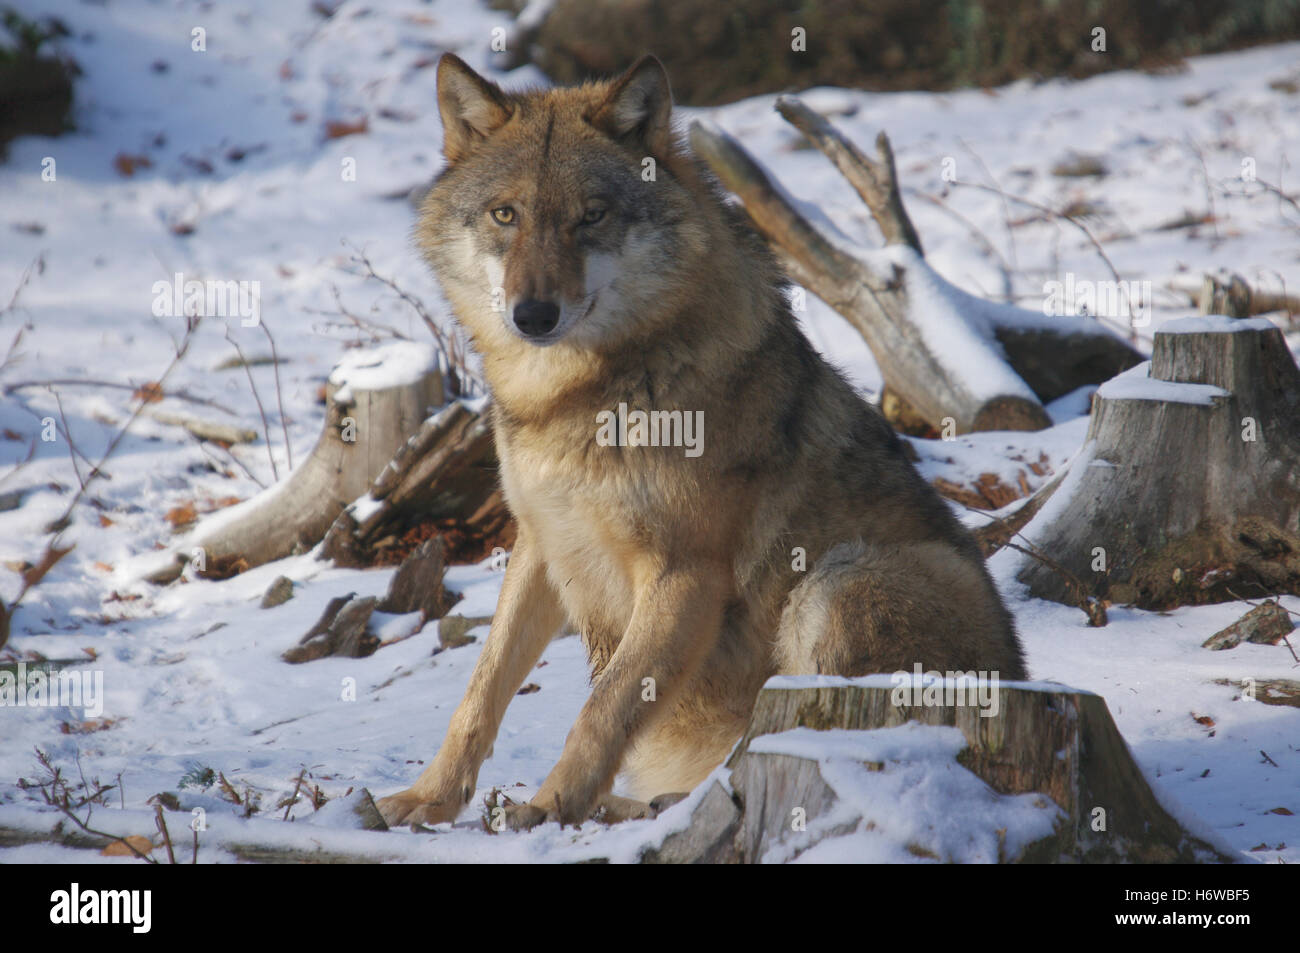 Parco nazionale di hunter predator wolf deserto caccia chase bandit raider inverno parco nazionale wild hunter di conservazione Foto Stock